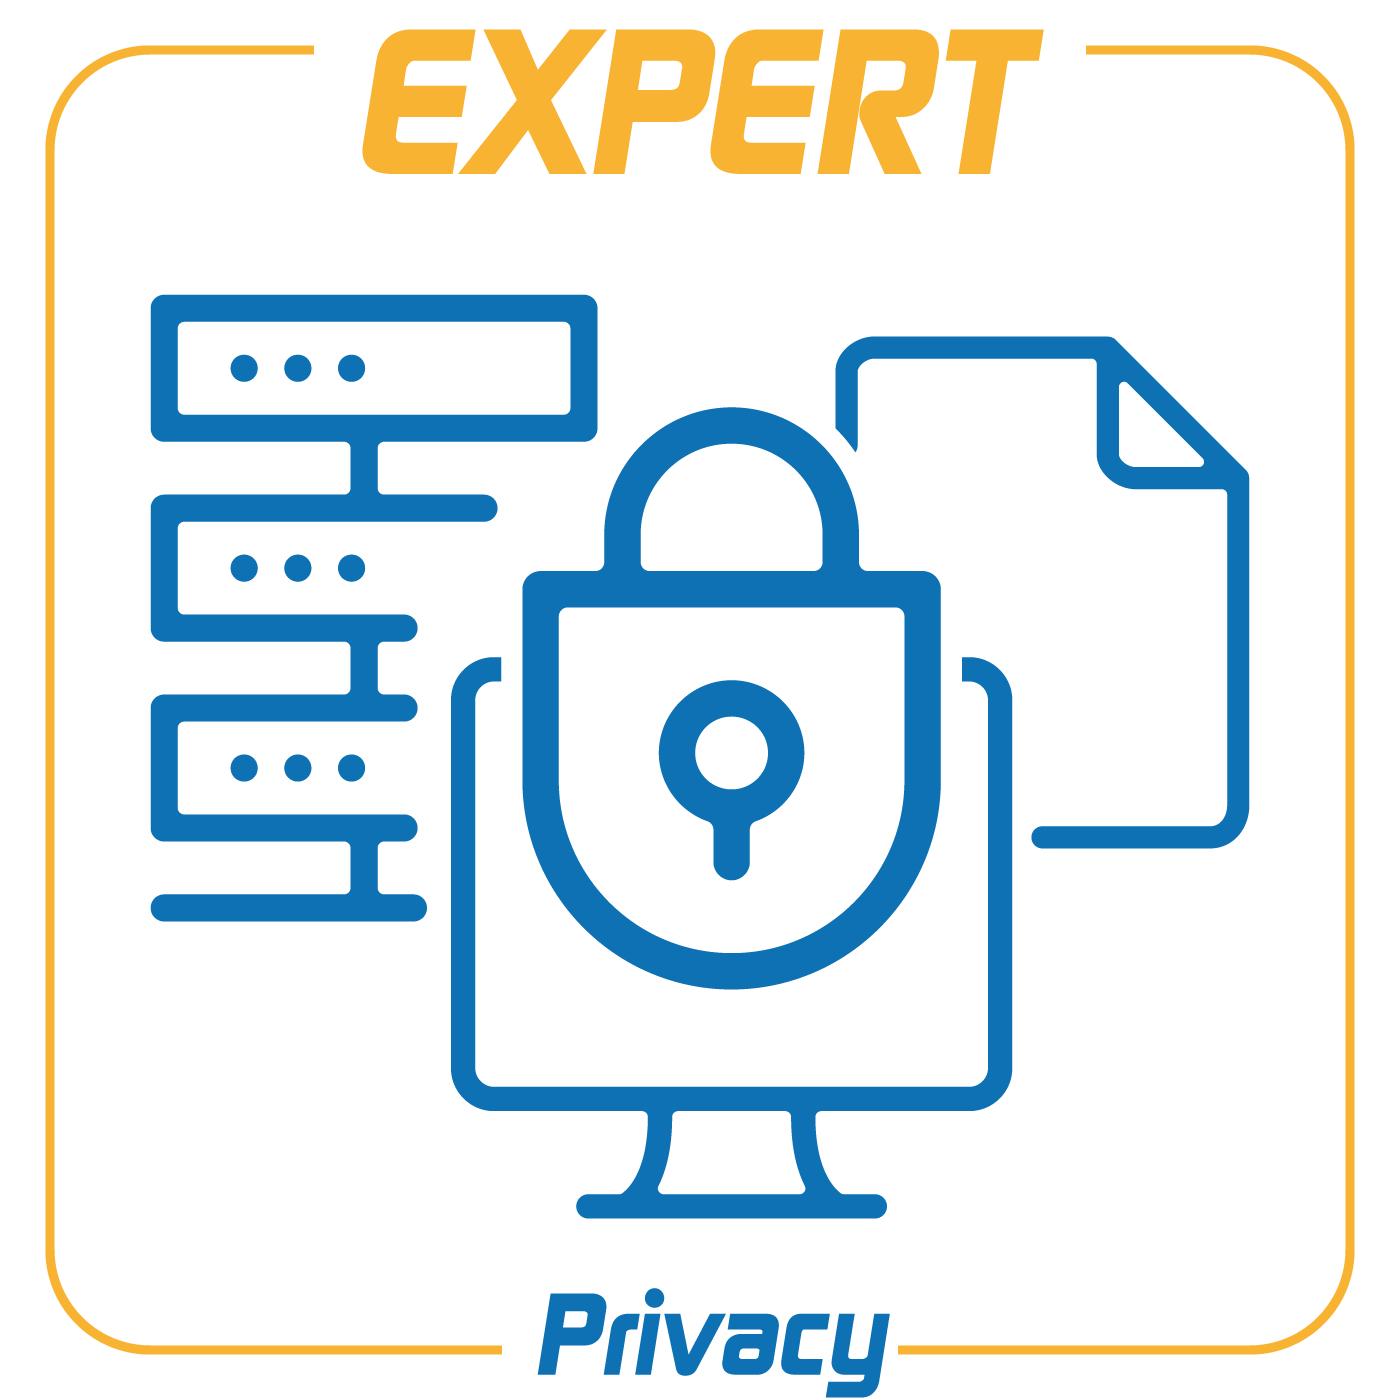 Expert PrivacySoftware per la gestione dei dati personali in conformità al Regolamento UE 679/2016: gestione dei registri delle attività di trattamento (art. 30),  analisi della sicurezza del trattamento (art. 32), informative sul trattamento (artt. 13 e 14)